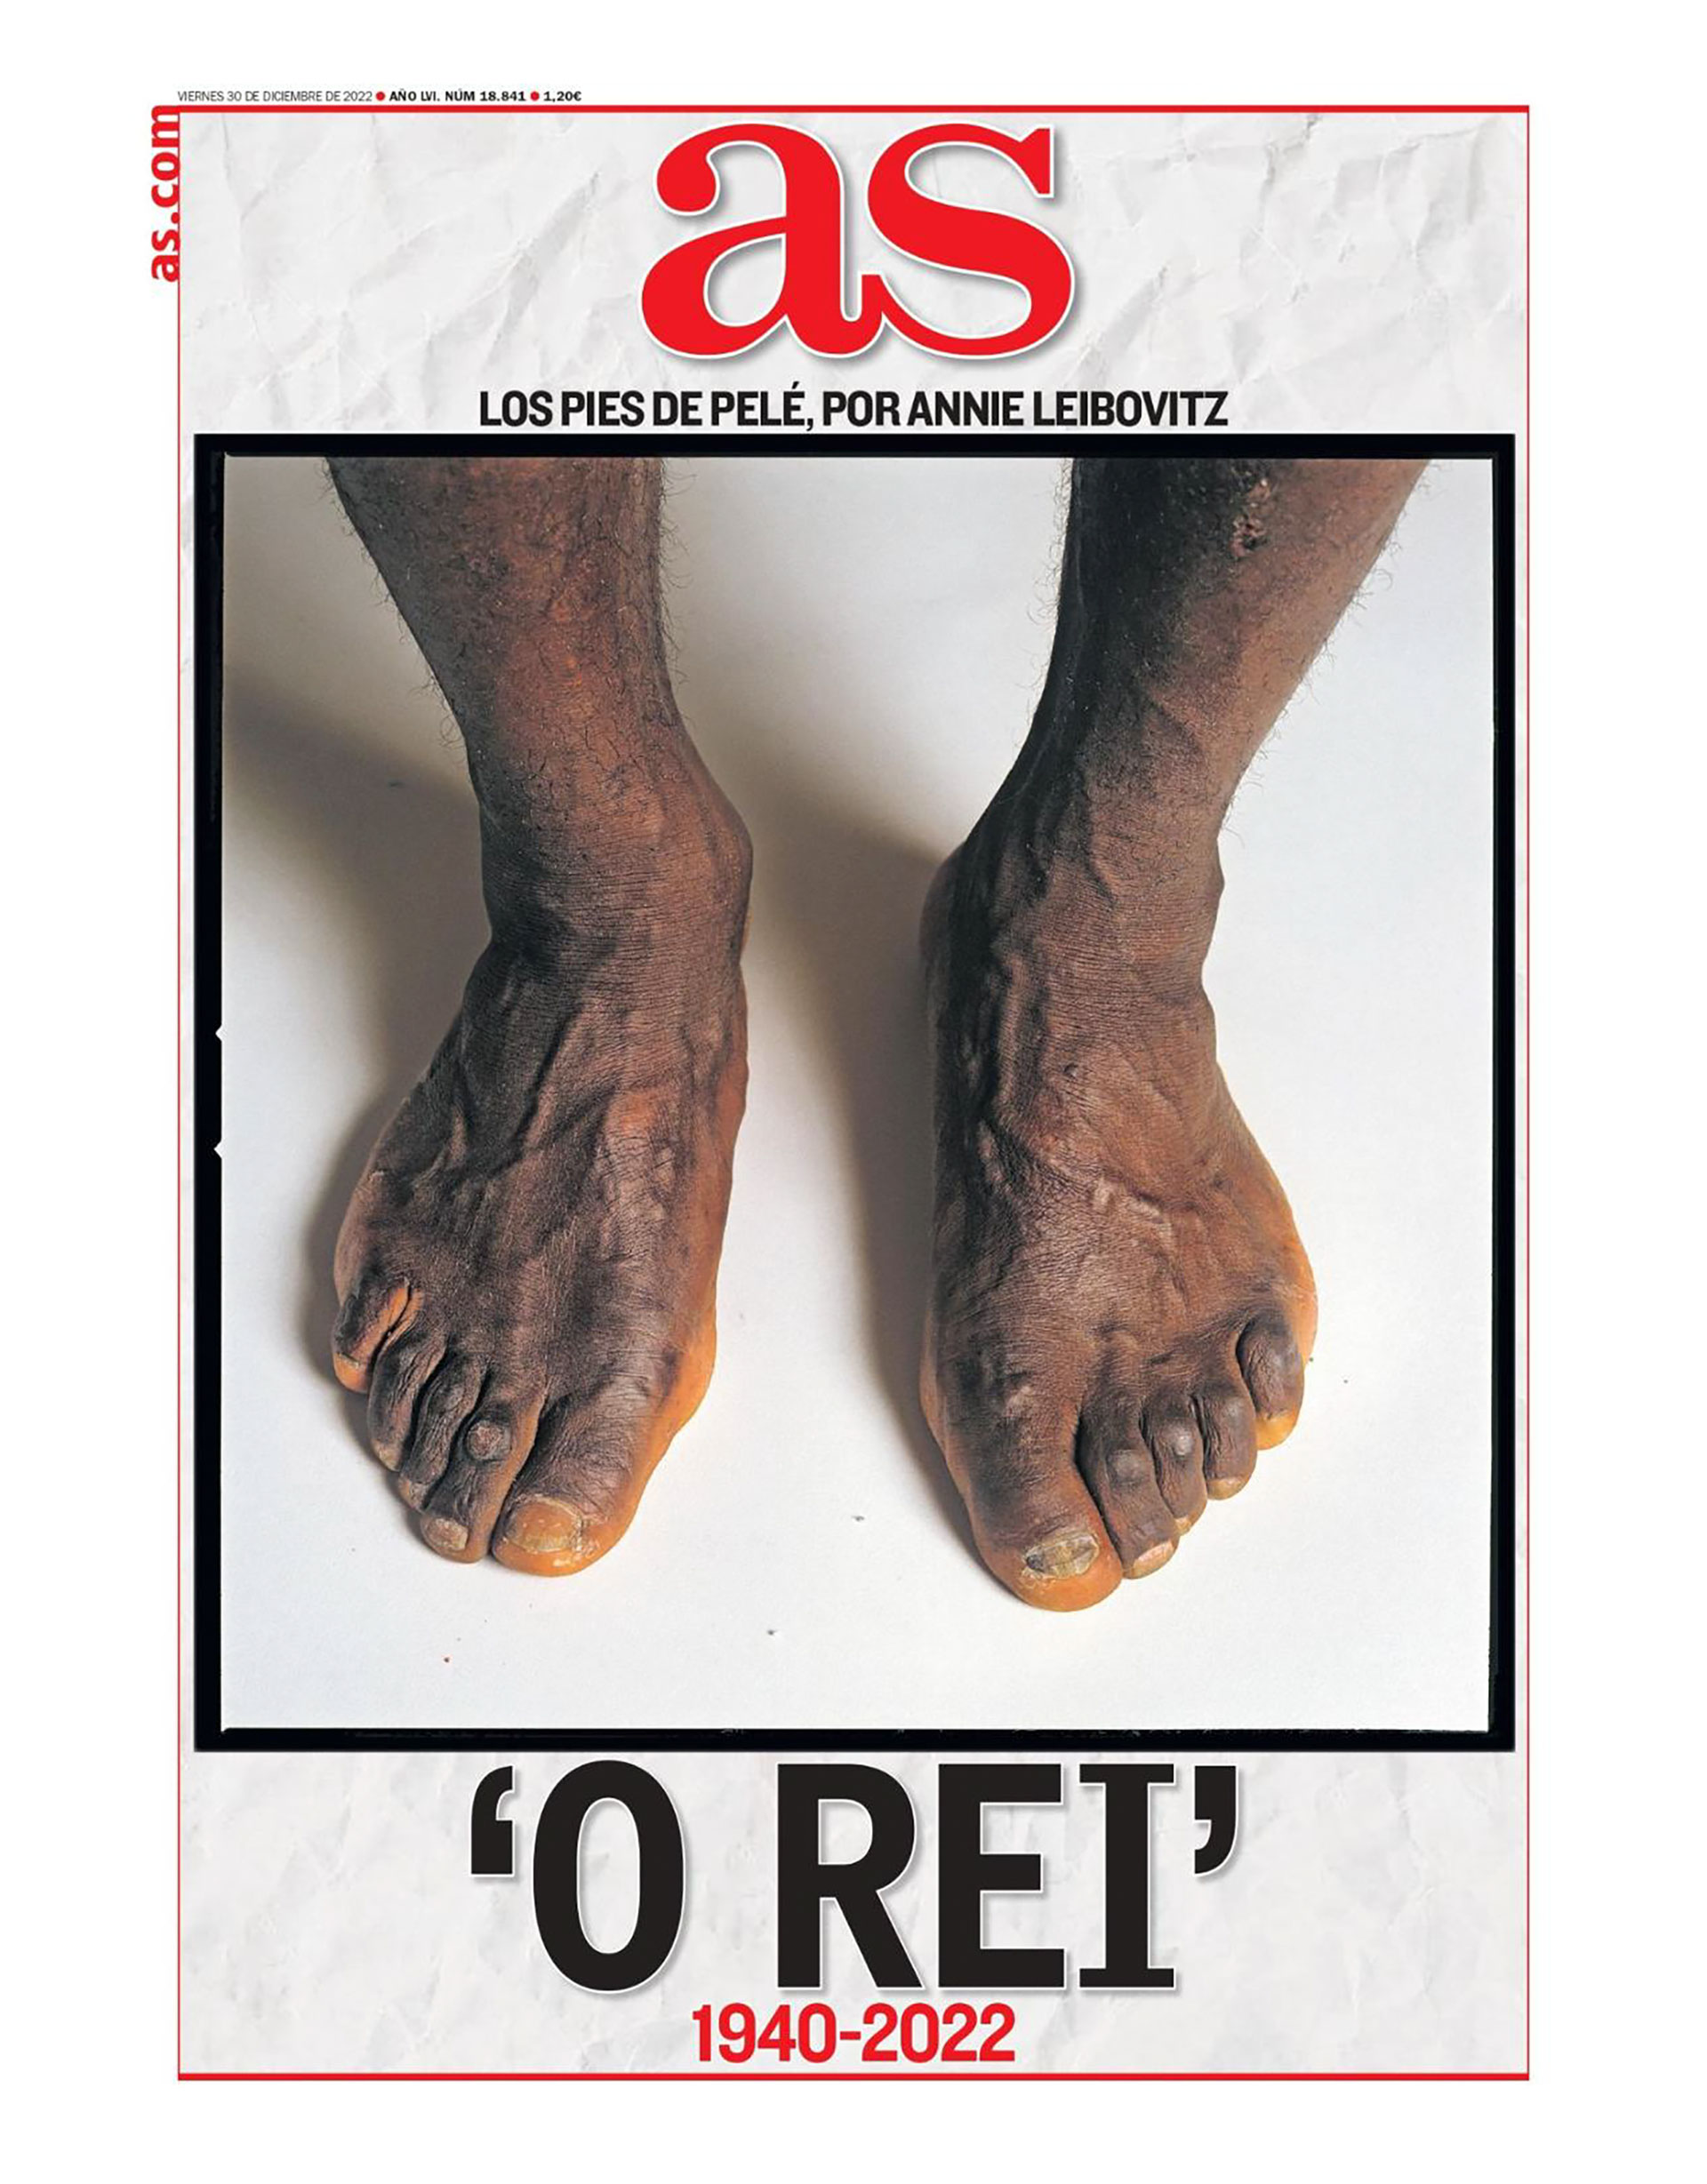 Zgur_ on X: Les pieds de #Pele, par Annie Leibovitz, en couverture du  journal sportif footballistique espagnol @diarioas Merci @a_bellanger  @franceinter 👍  / X